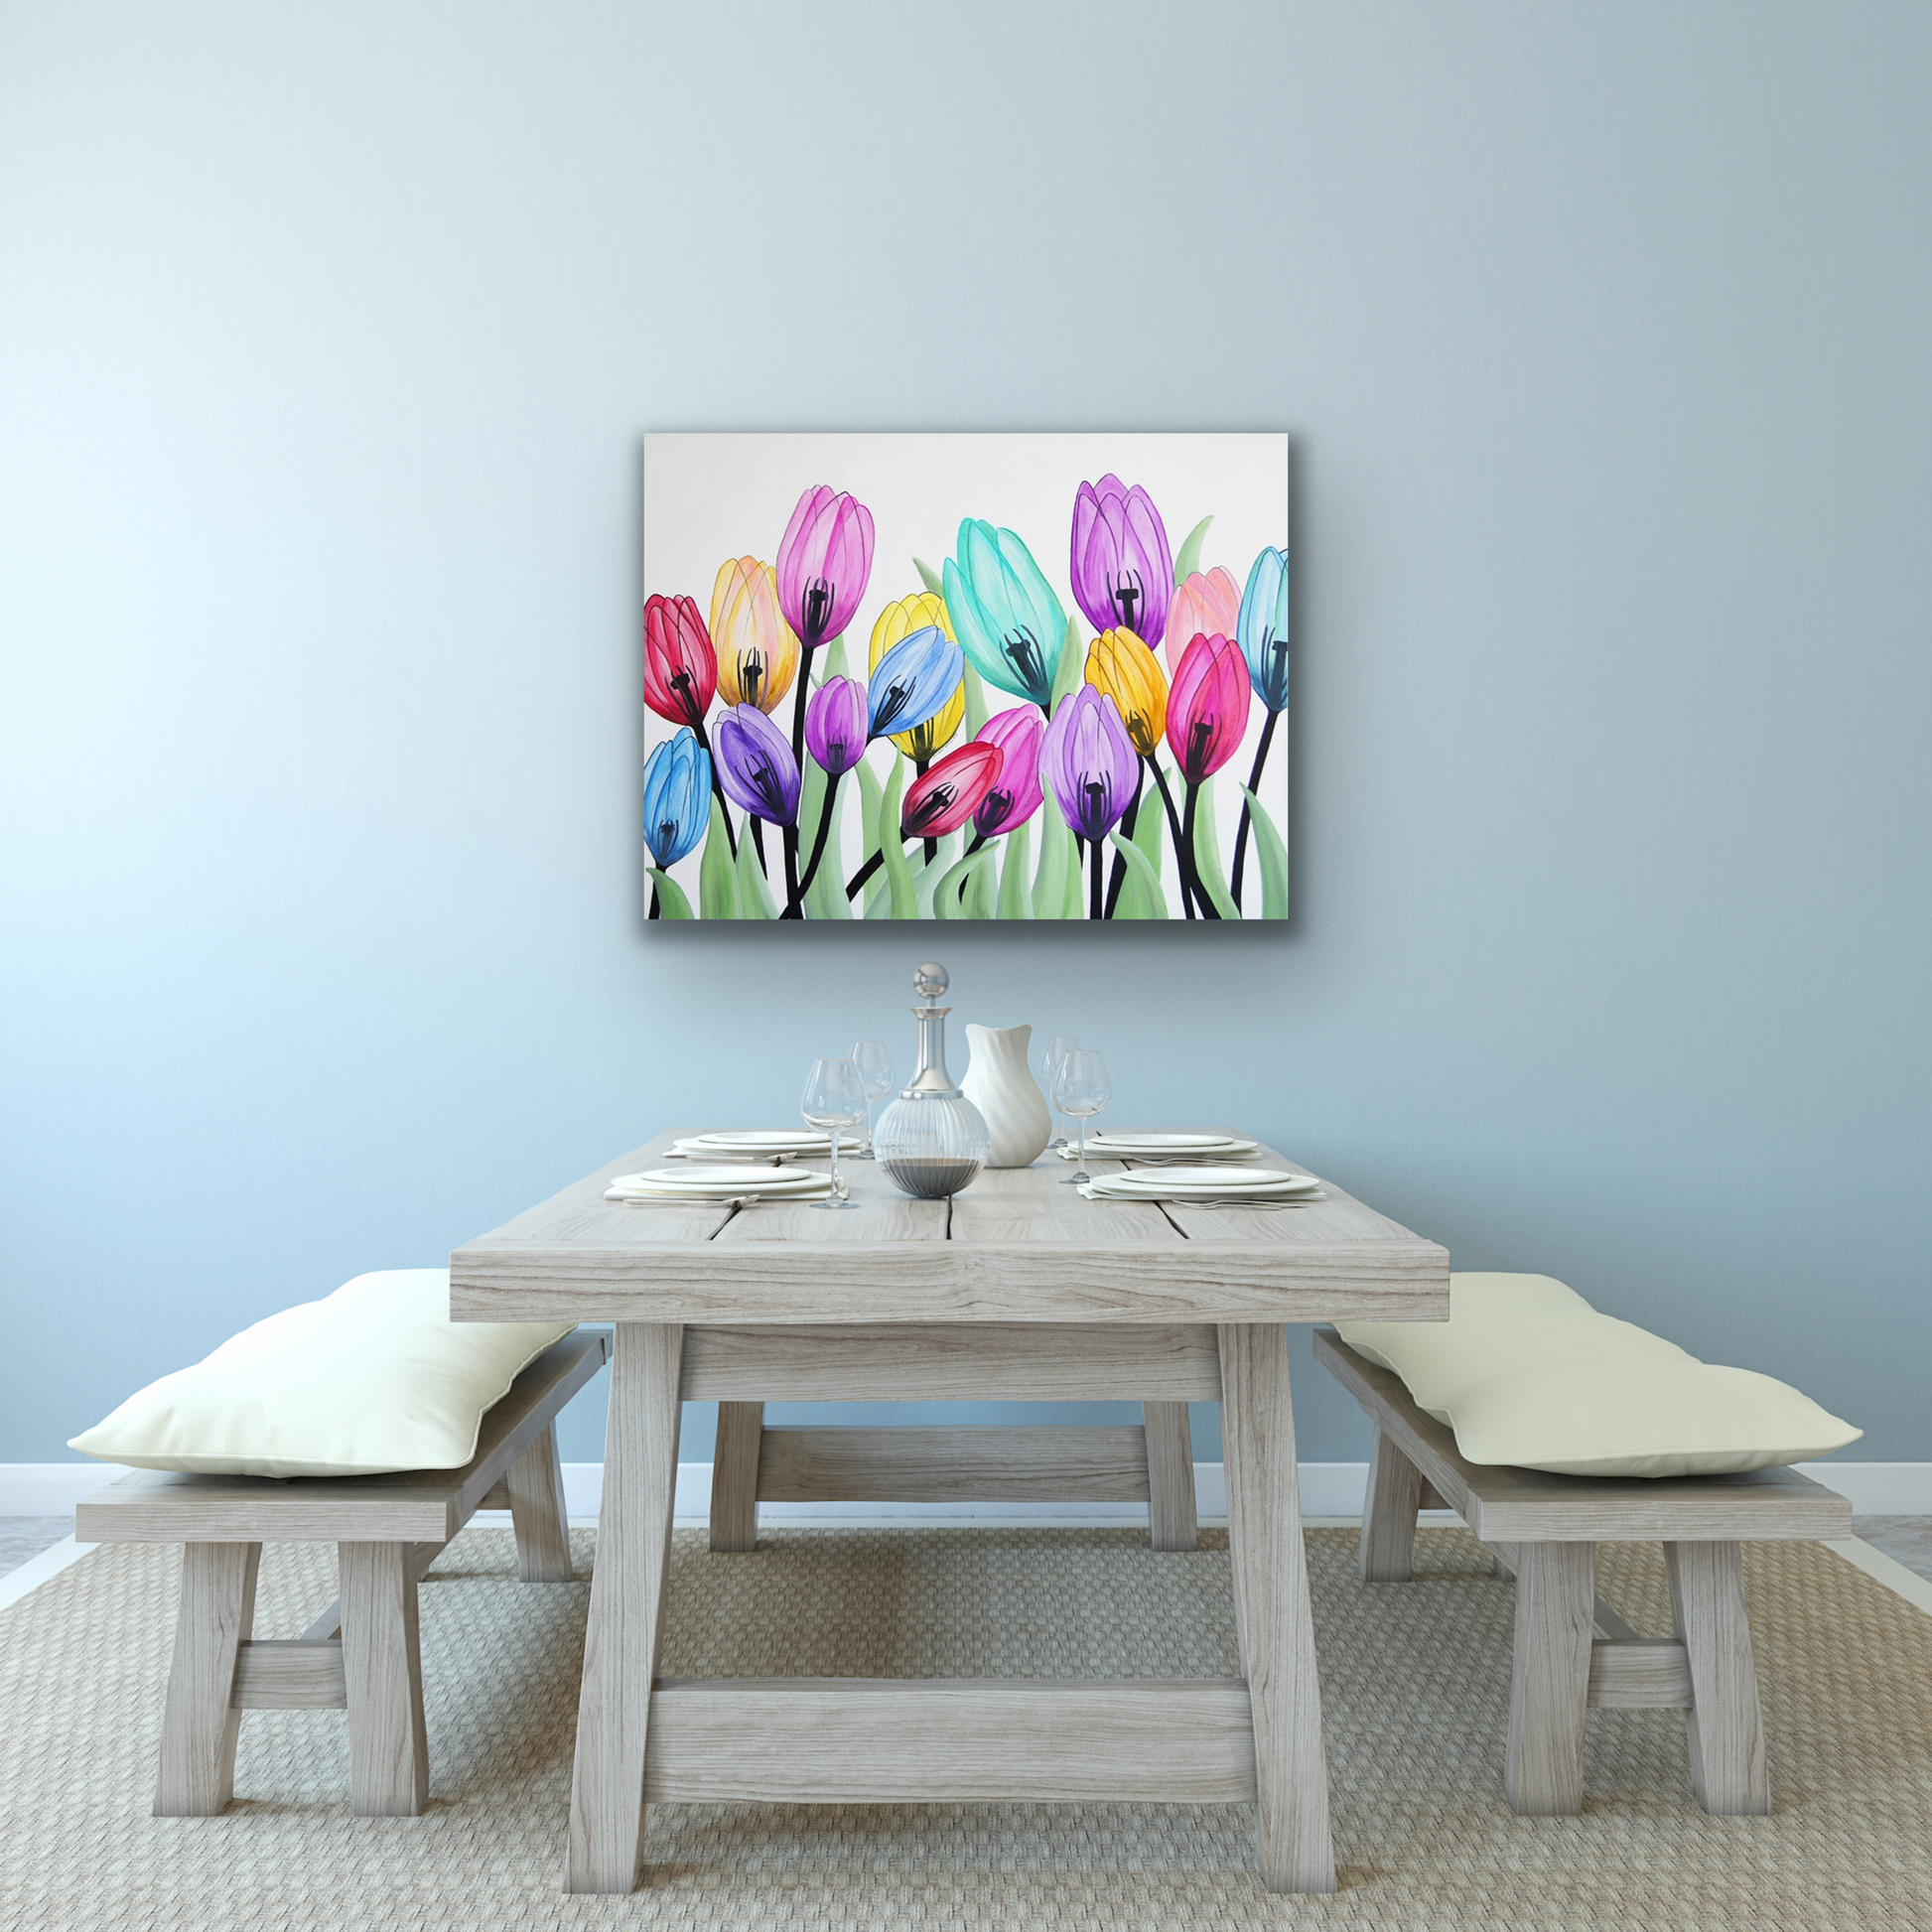 "Joyful" work of art will look great in your dining room, bedroom, living room or bedroom.